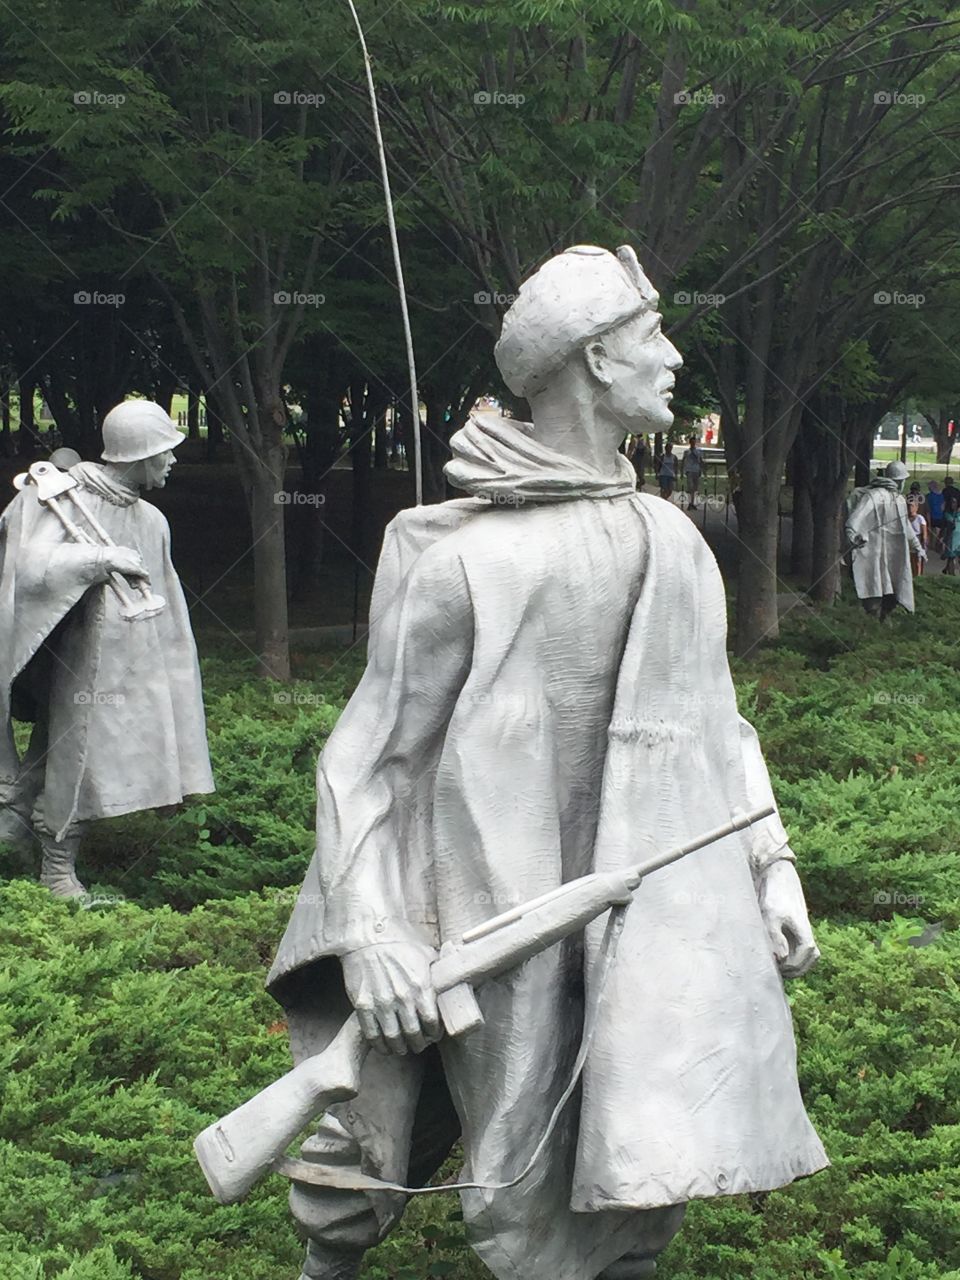 Korean War memorial . Korean War veteran 